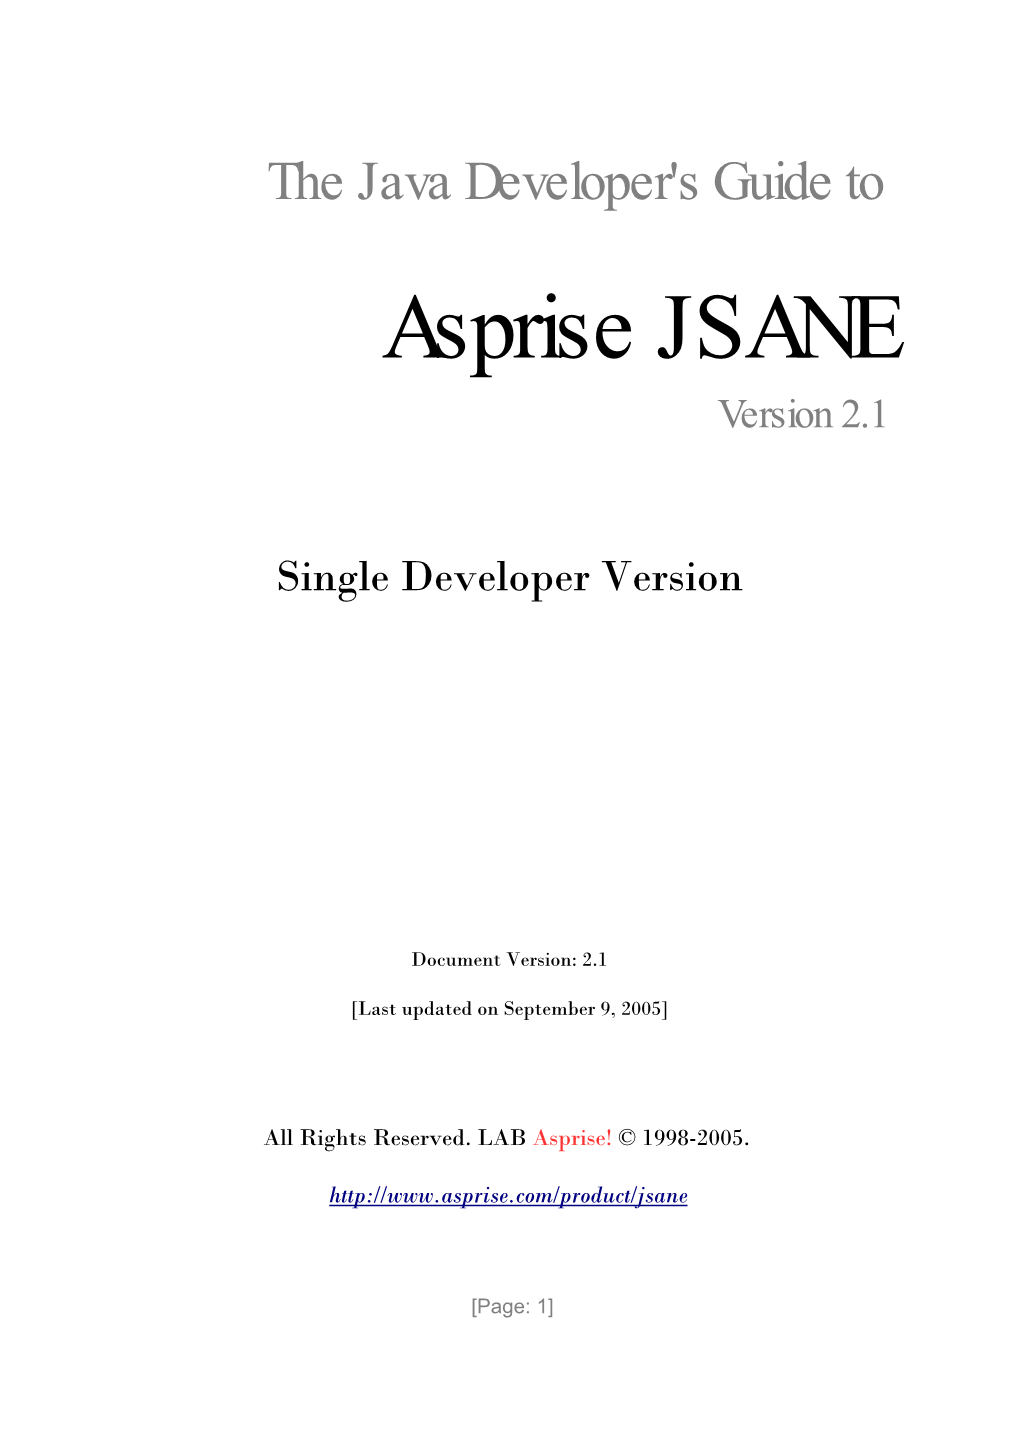 Developersguide-JSANE.Pdf [400K, 21Pp]